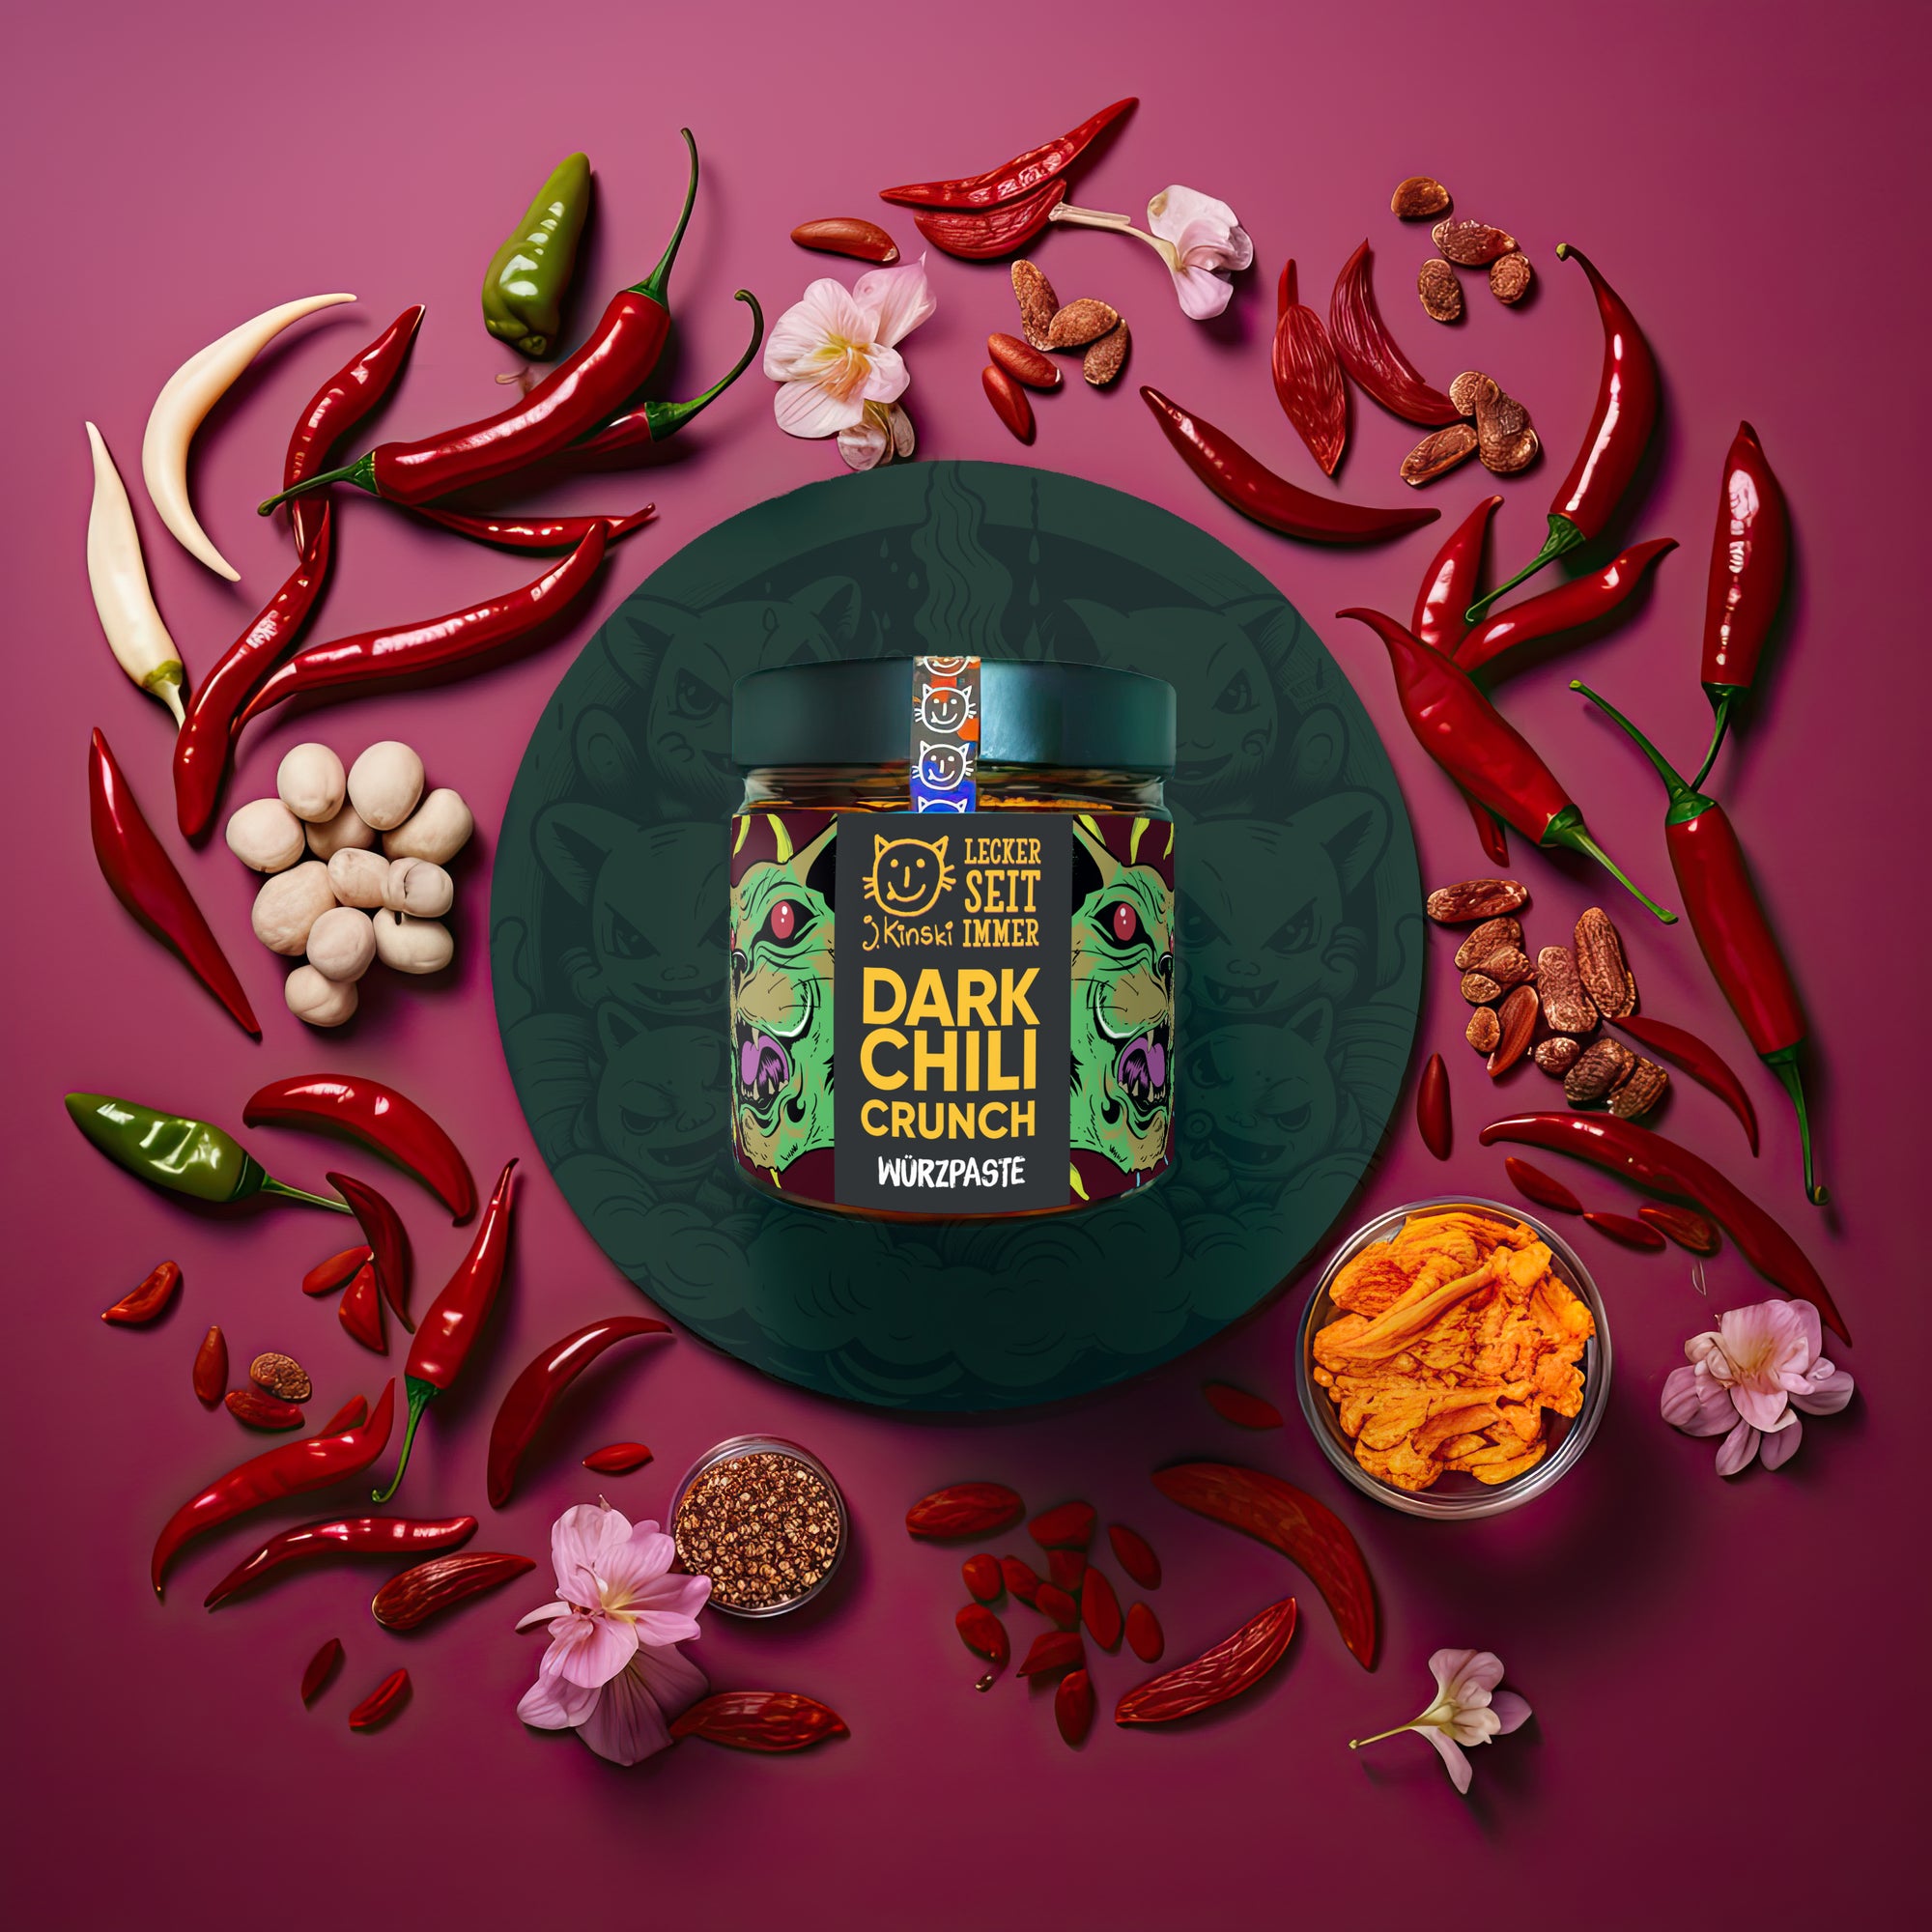 Bio Dark Chili Crunch vegan